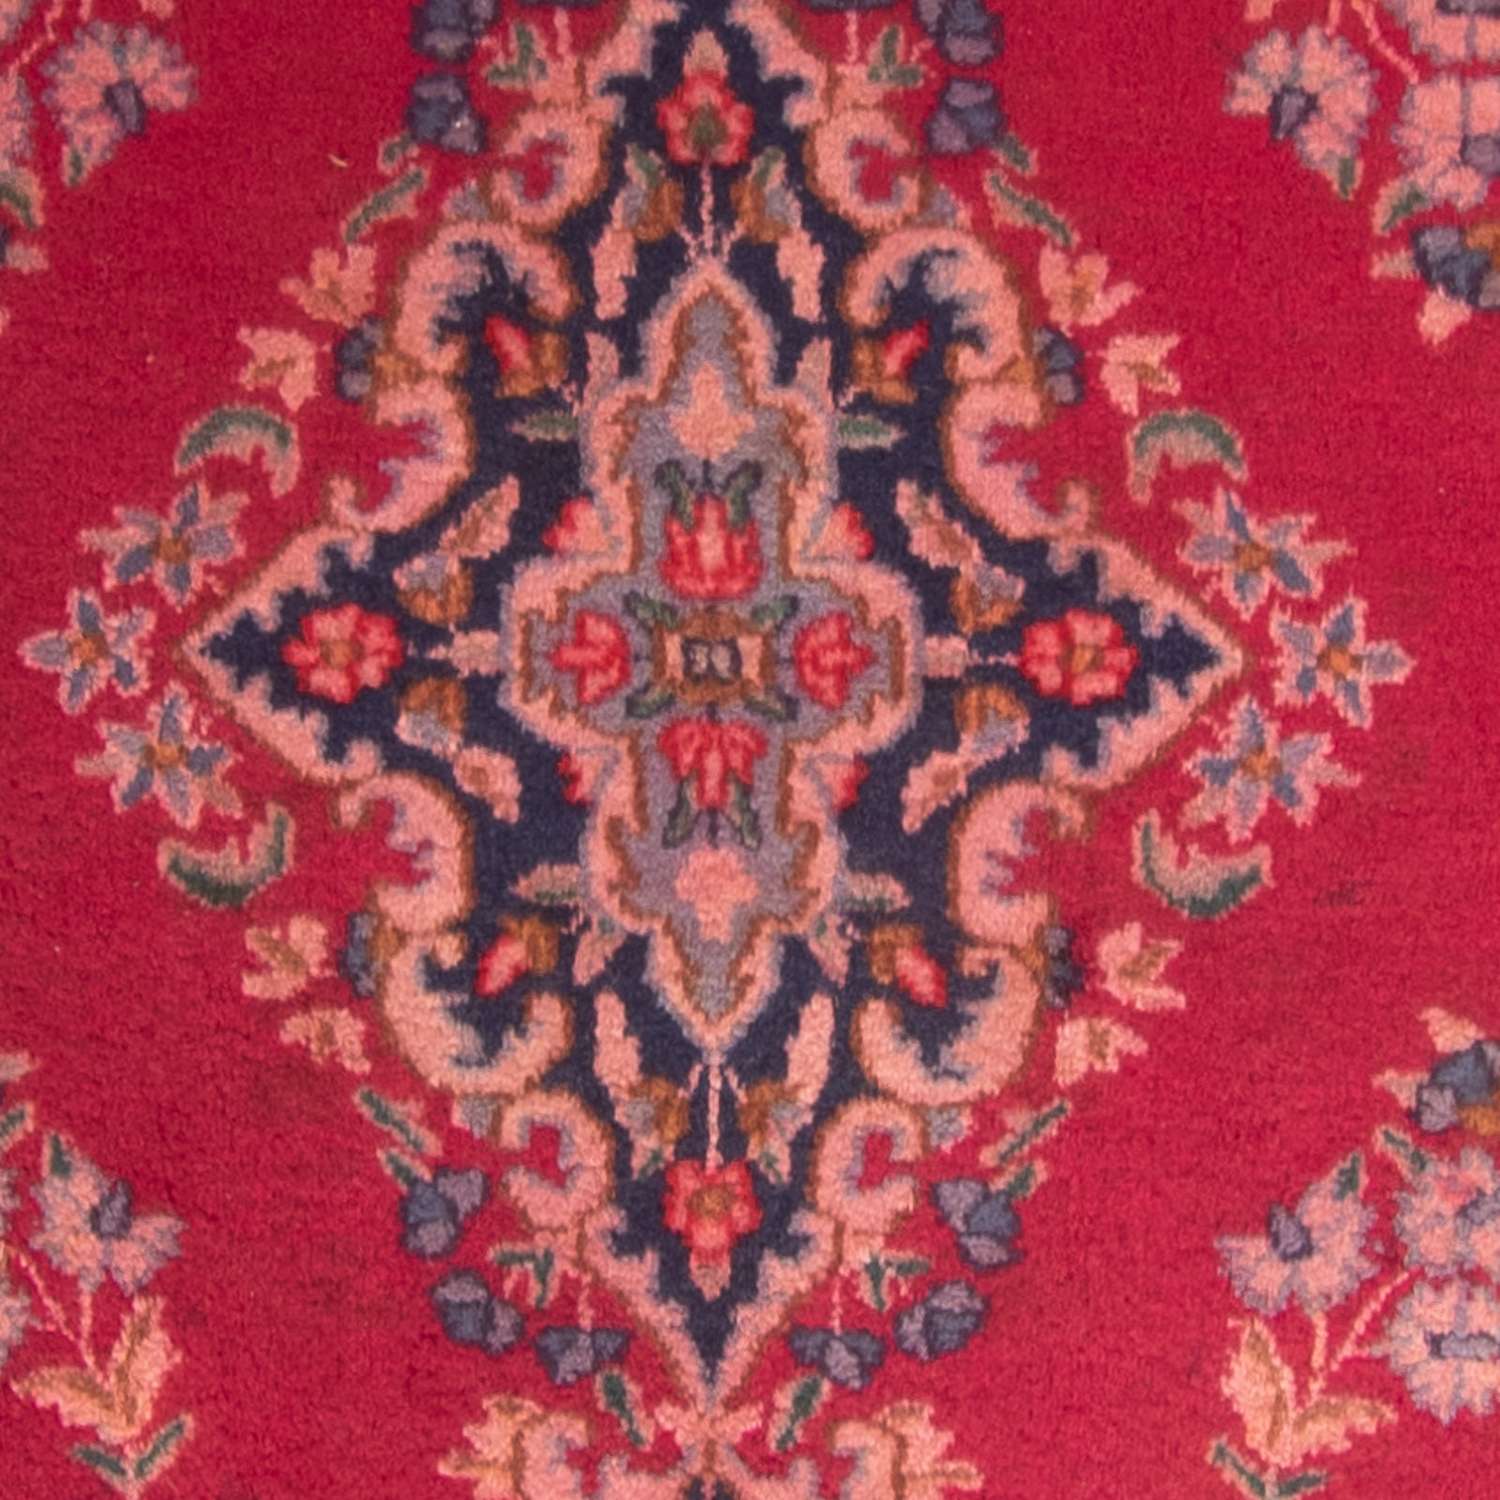 Perzisch tapijt - Klassiek - 330 x 235 cm - rood